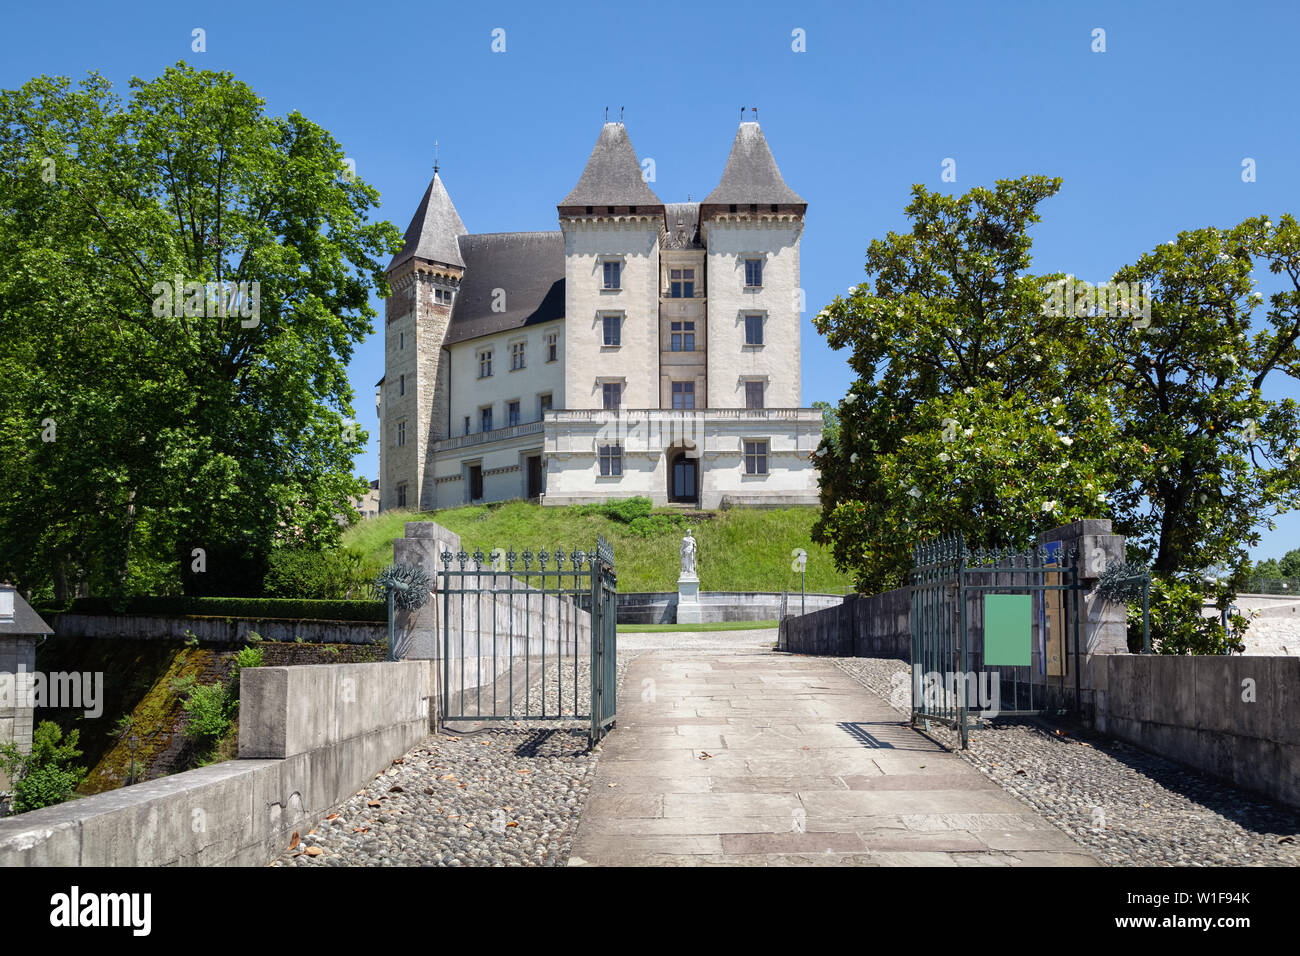 Blick auf das Schloss Pau (Chateau de Pau), Pyrenees Atlantiques, Aquitaine, Frankreich Stockfoto